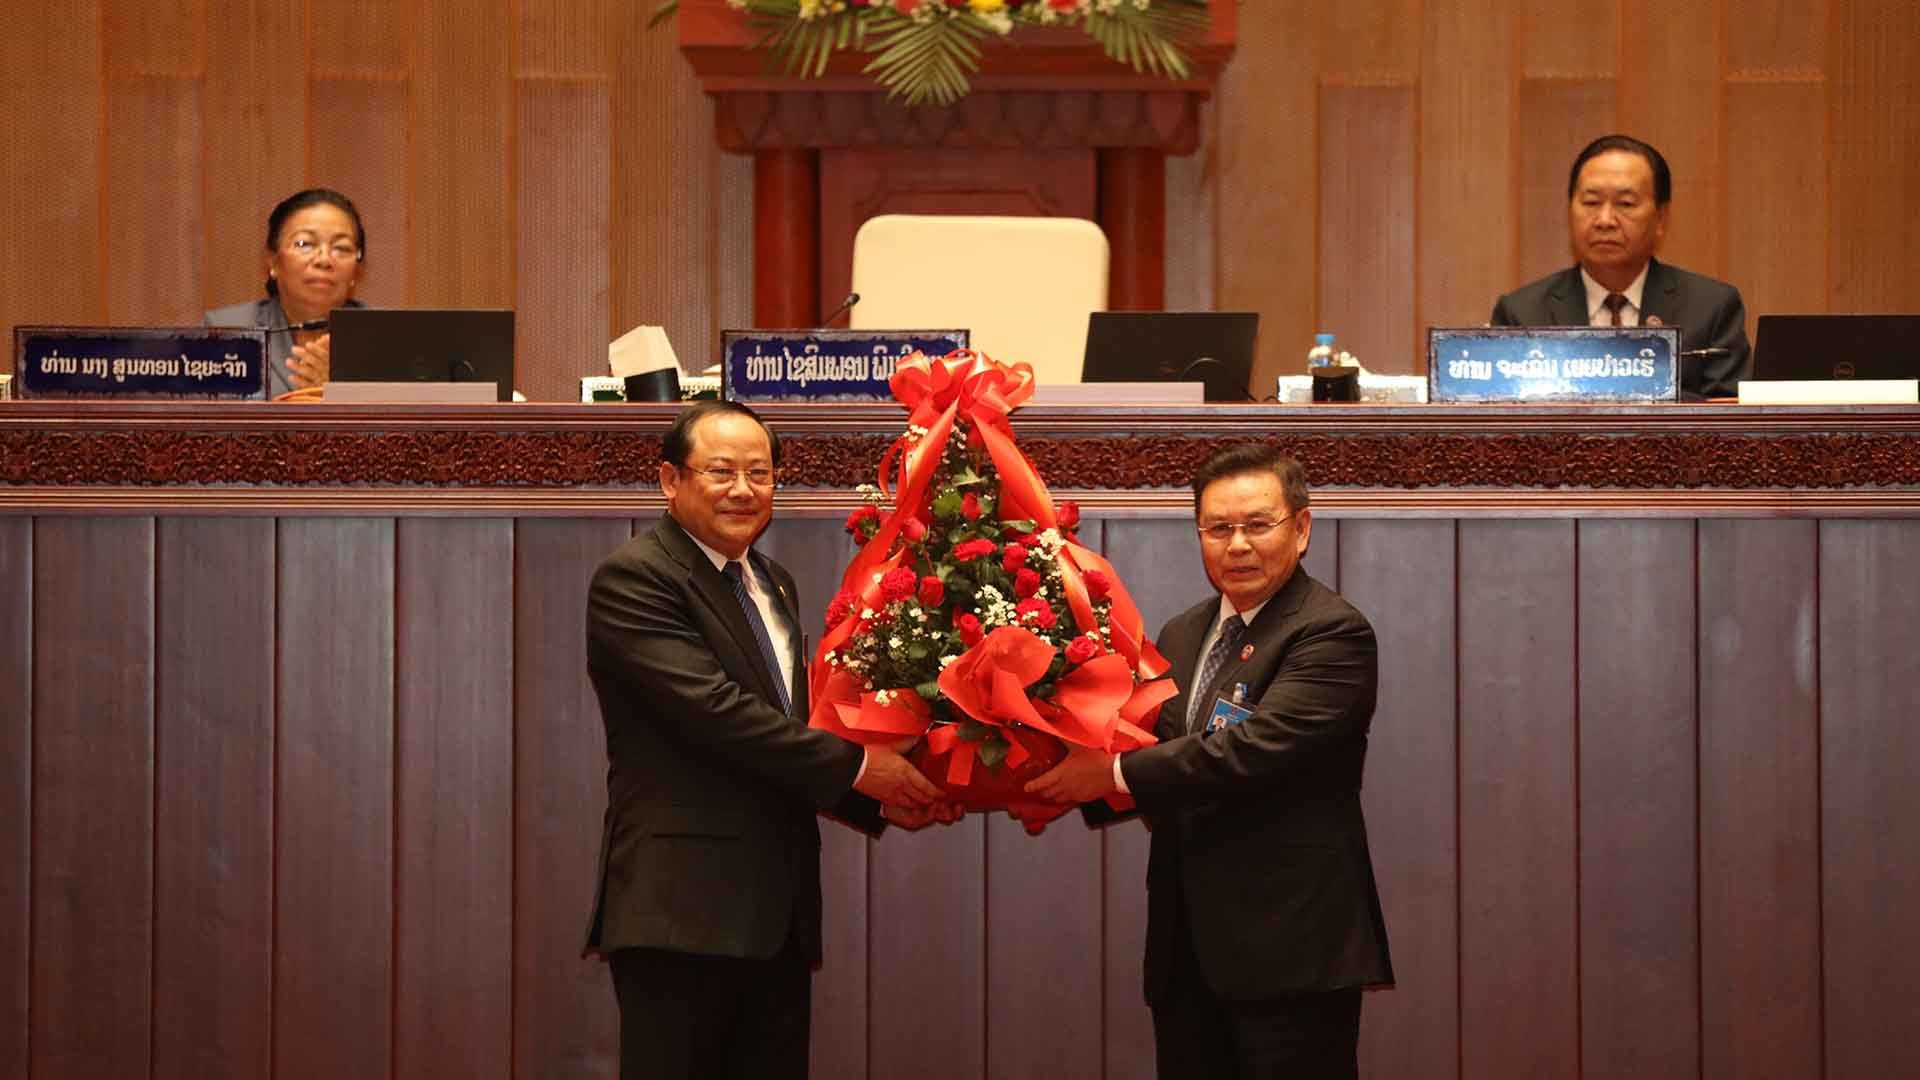 Chủ tịch Quốc hội Lào Saysomphone Phomvihane (phải) chúc mừng đồng chí Sonexay Siphandone được bầu làm Thủ tướng Chính phủ Lào. (Nguồn: TTXVN)